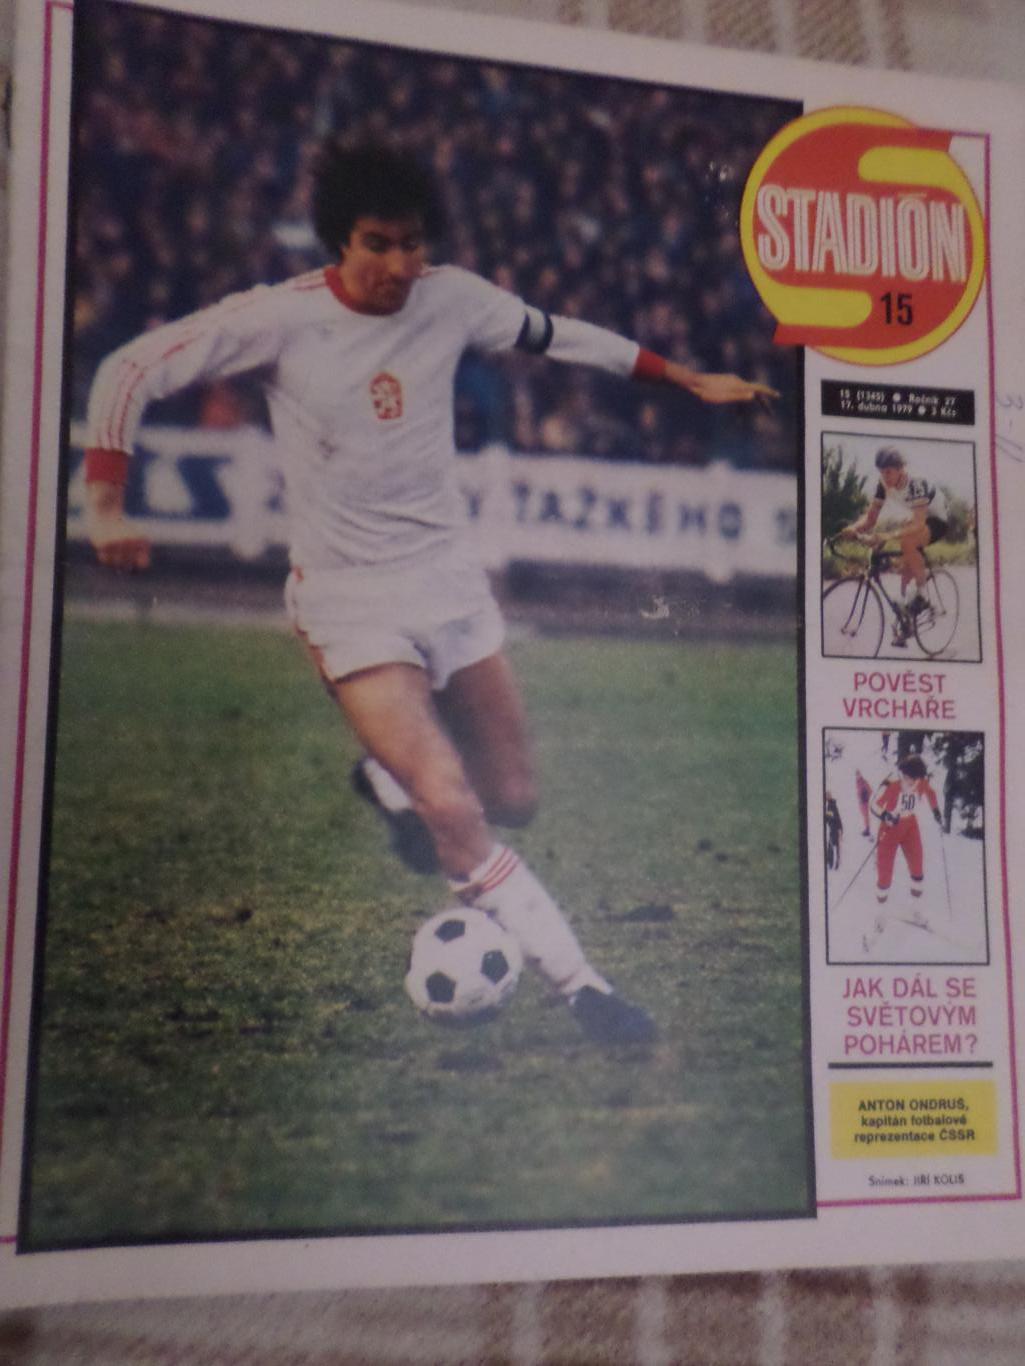 журнал Стадион Чехословакия № 15 1979 г постер Руда гвезда волейбол